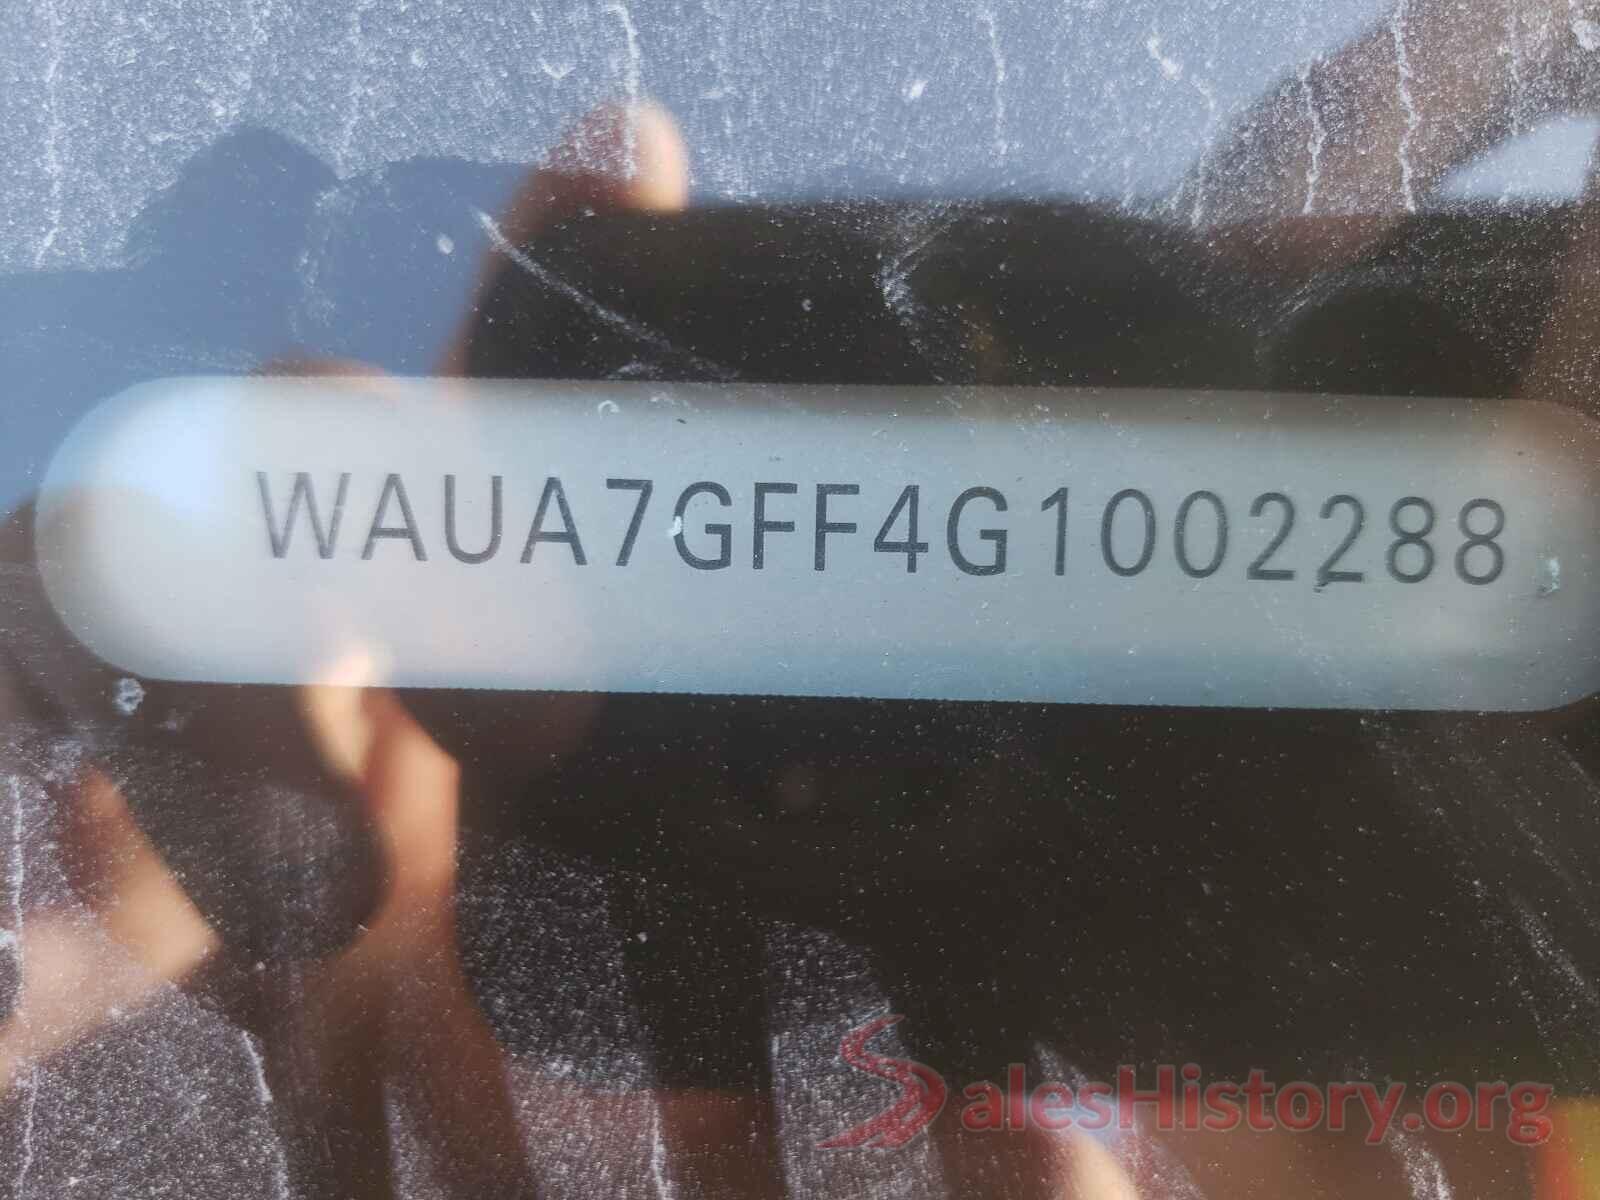 WAUA7GFF4G1002288 2016 AUDI A3